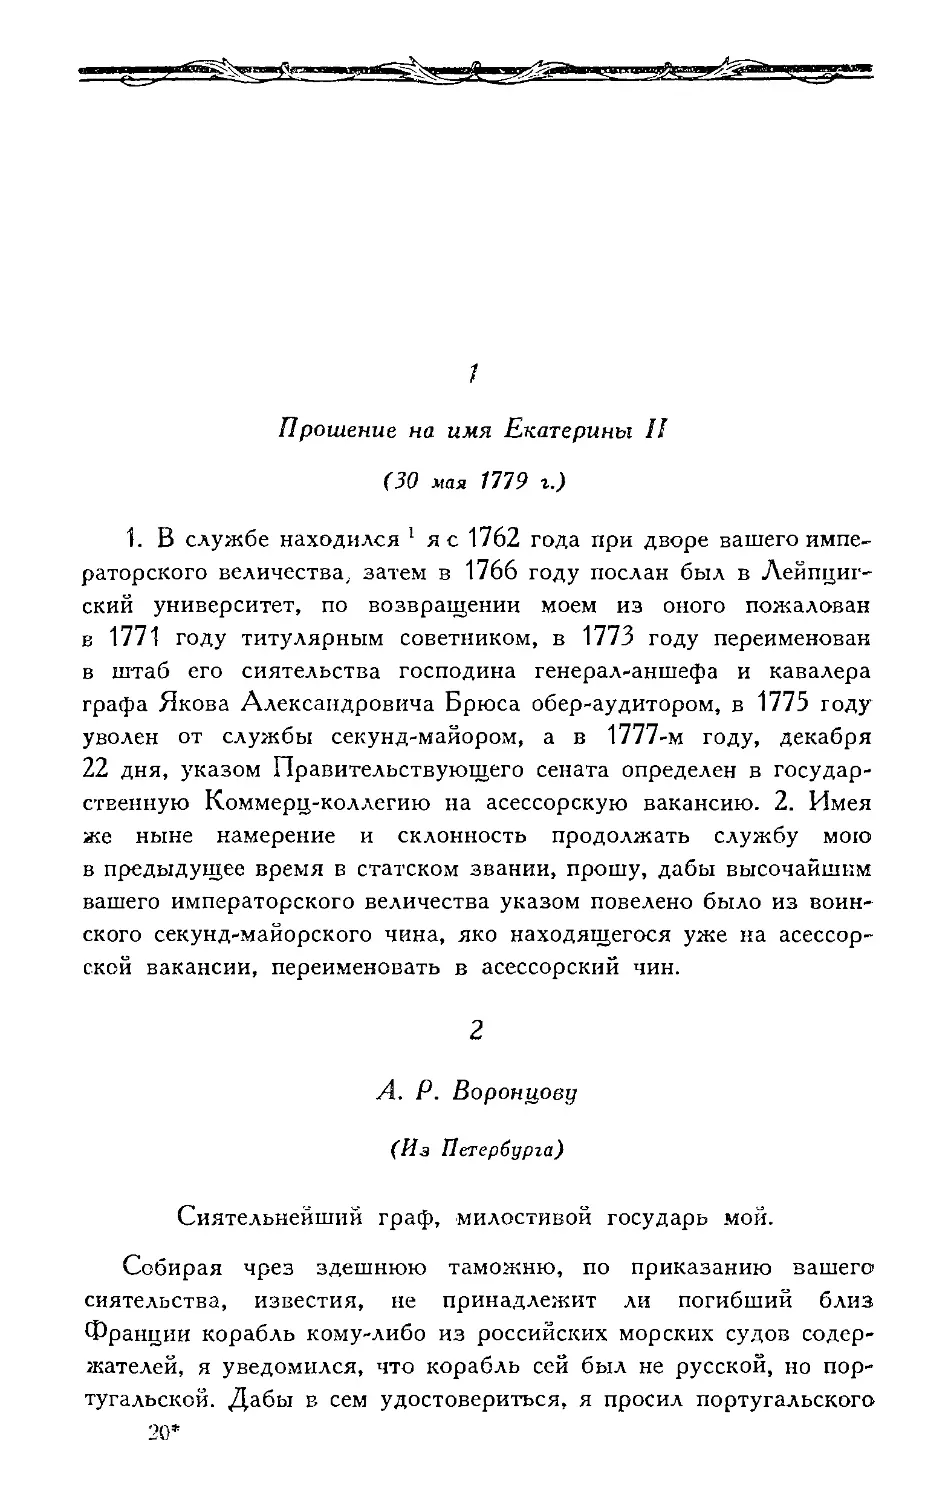 1. Прошение на имя Екатерины II (30 мая 1779 г.)
2—20. А. Р. Воронцову (1782—1790 гг.)